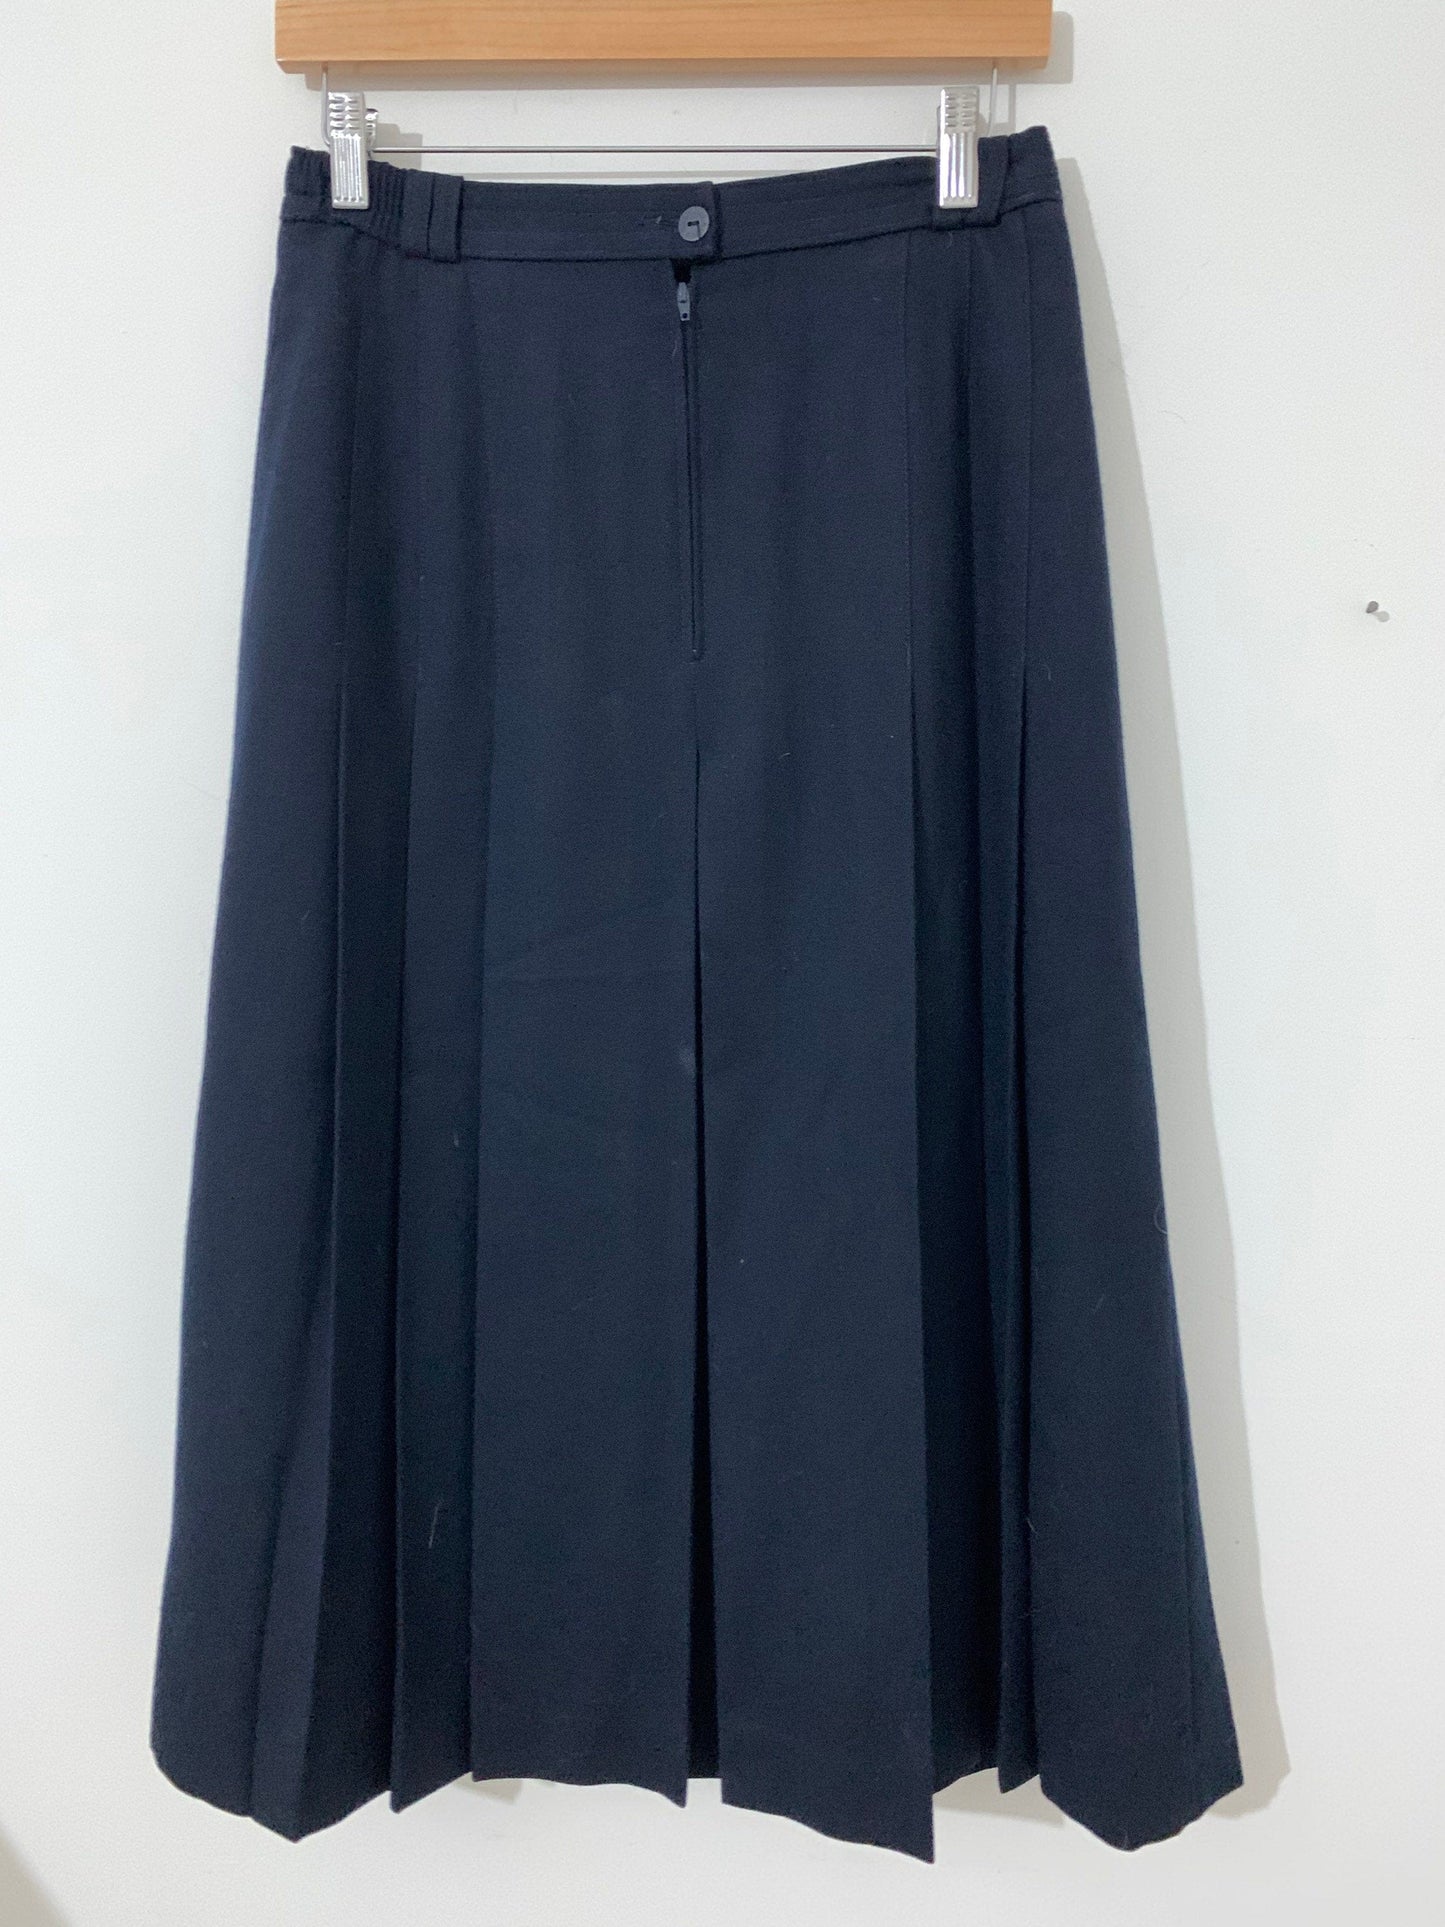 Vintage Navy Blue Pencil Skirt Knee Length  UK Size 14 - Brendella